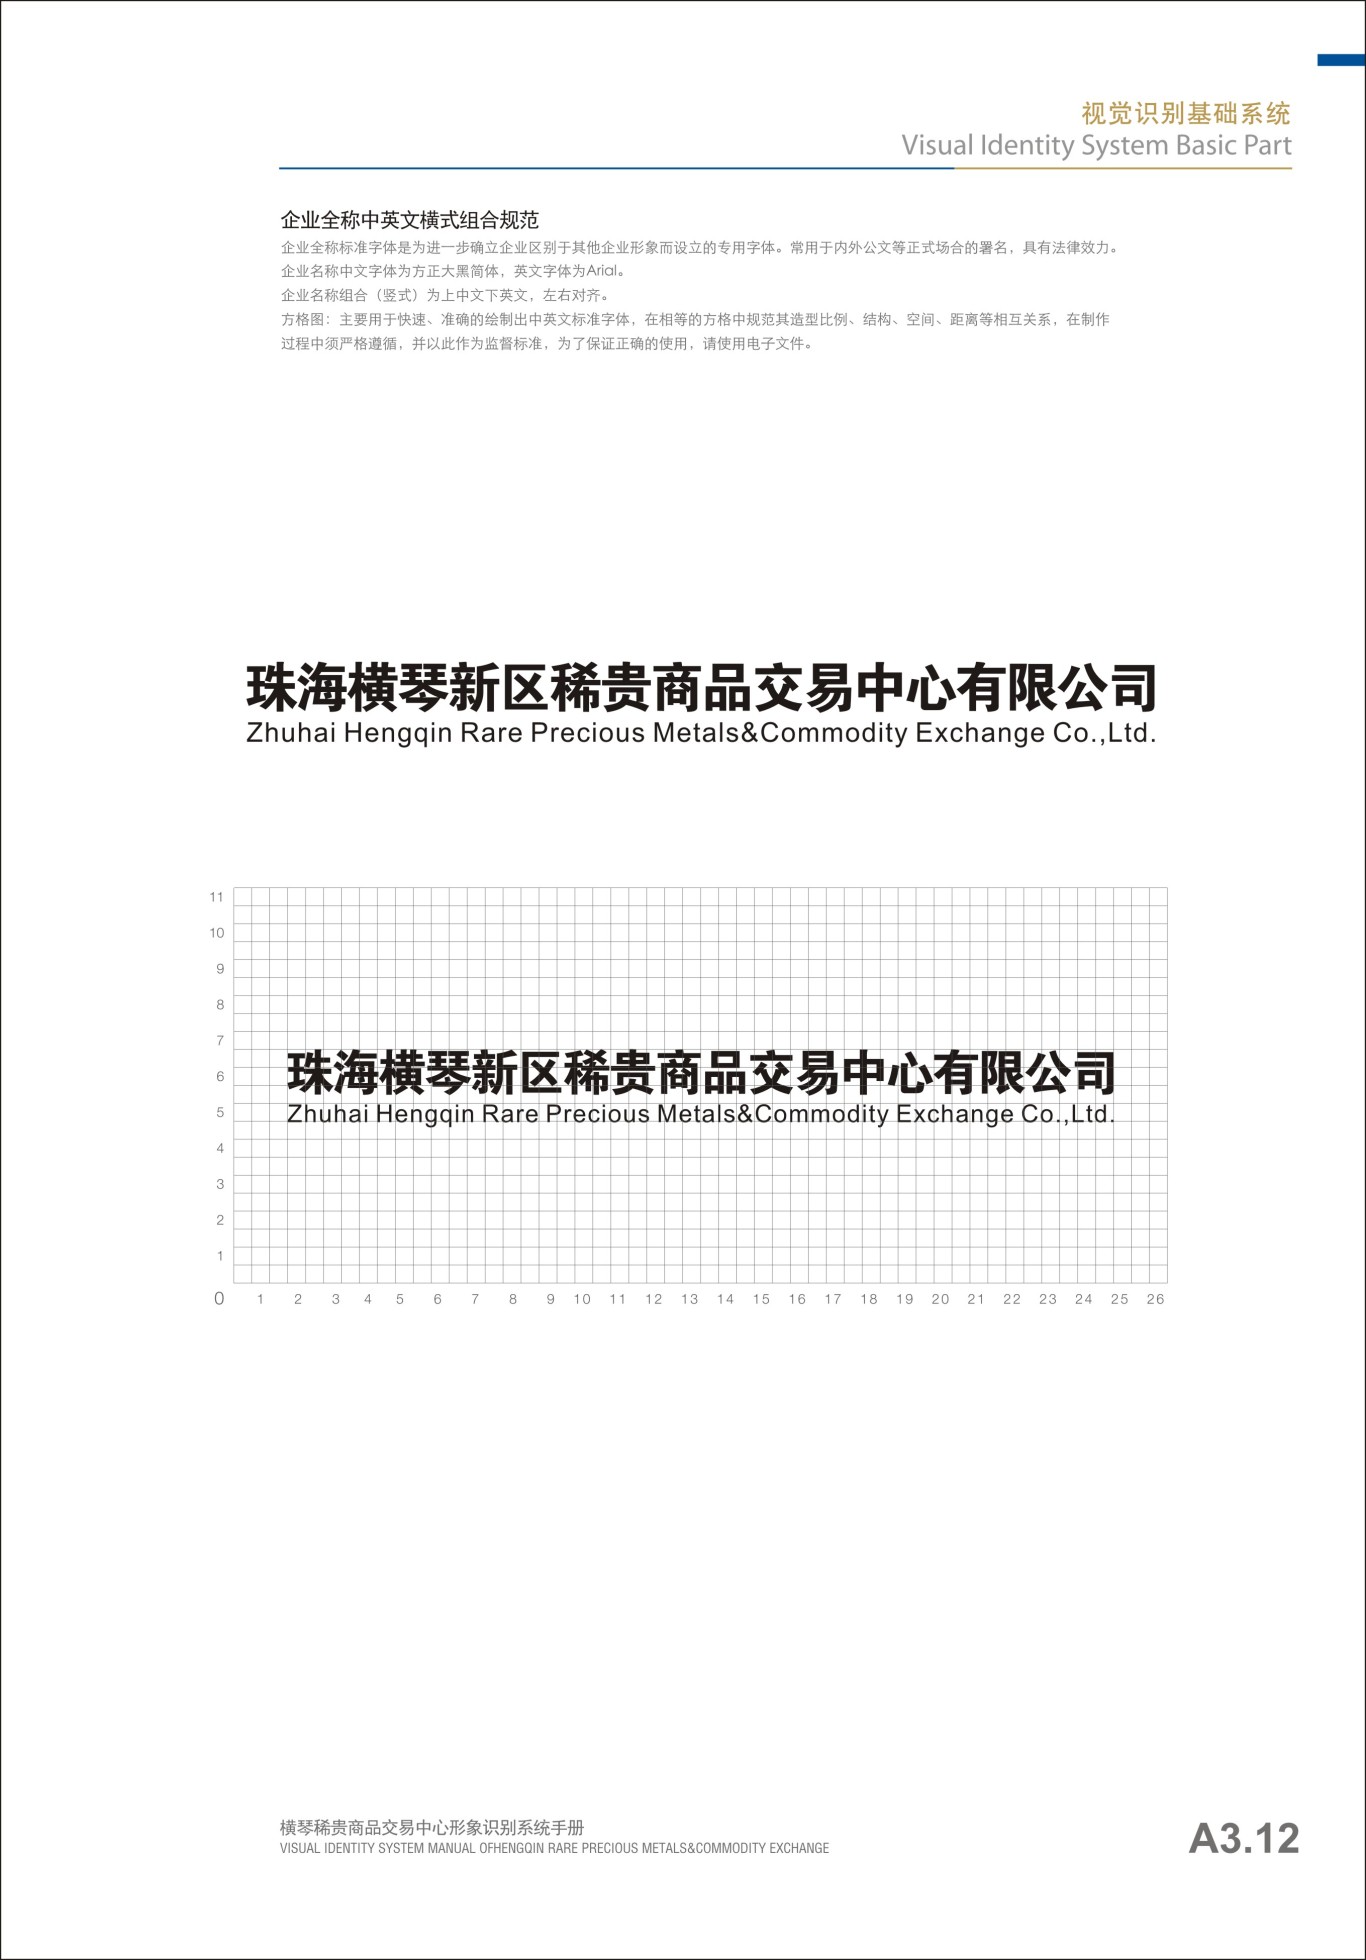 貴金屬行業橫琴稀貴VI手冊設計圖6